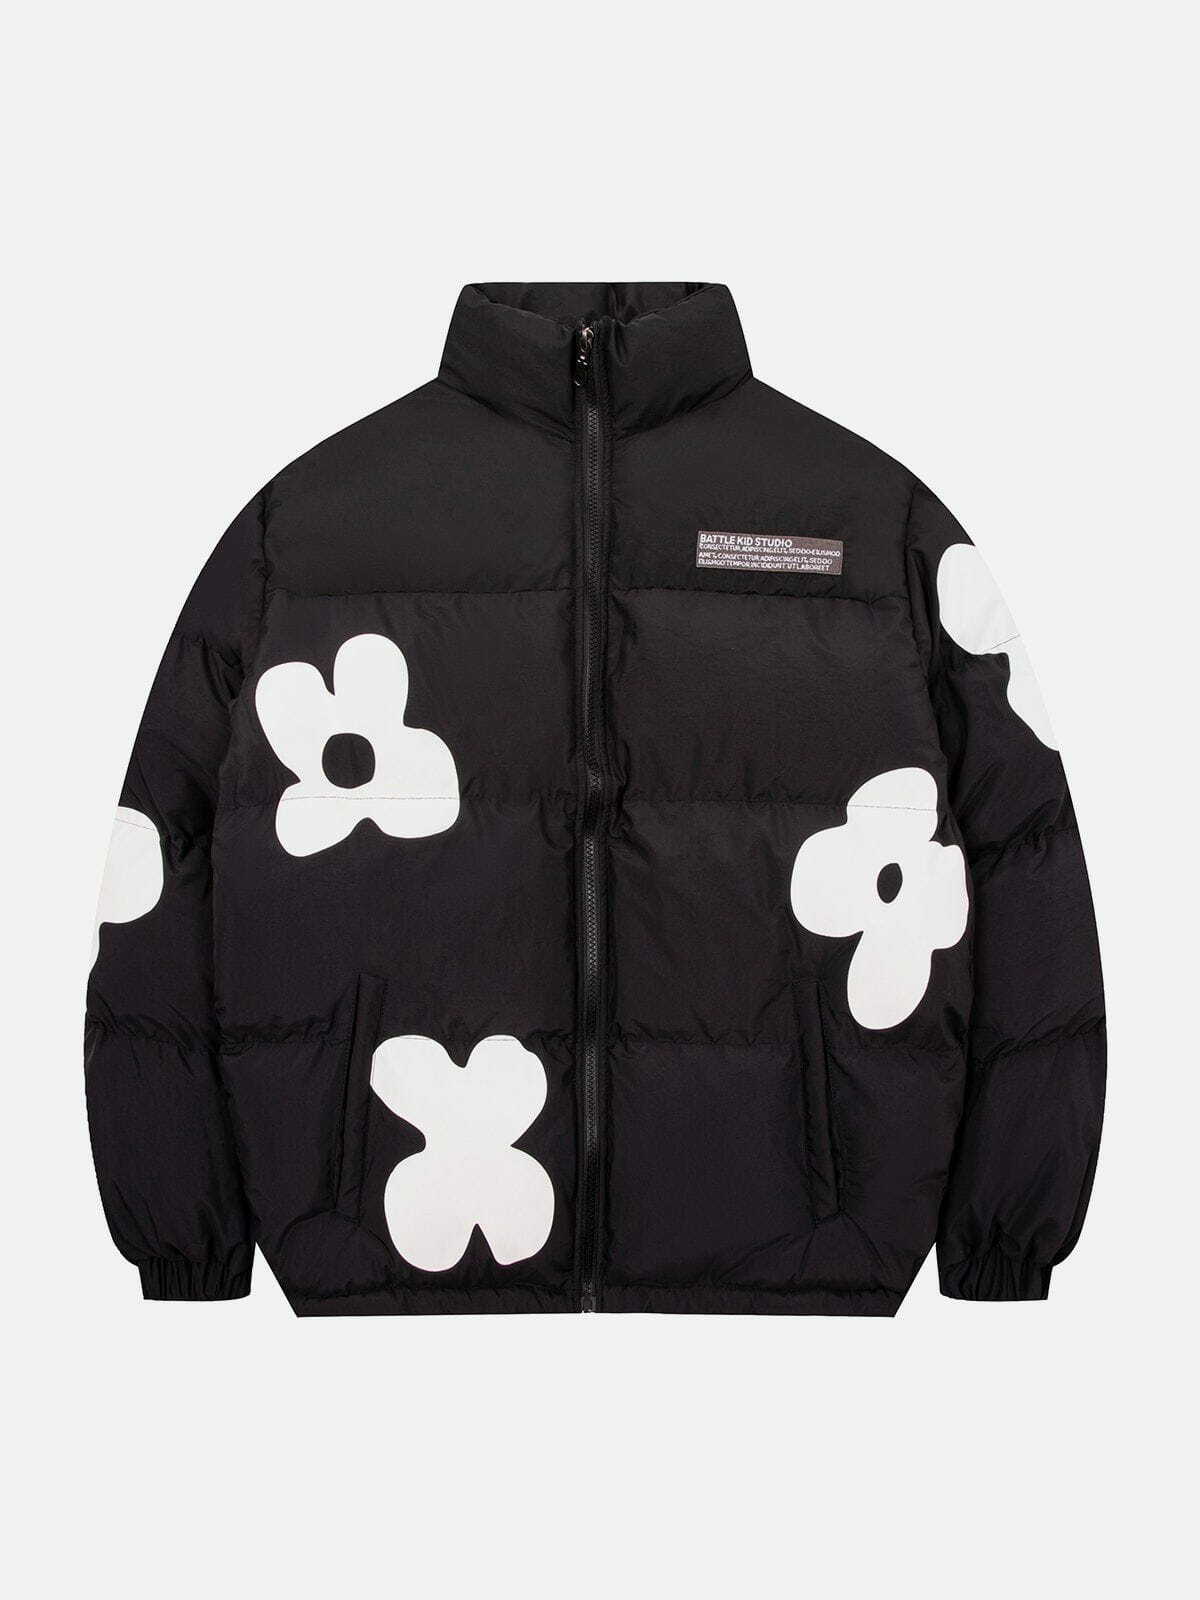 retro flower patchwork coat   chic & warm winter essential 6519